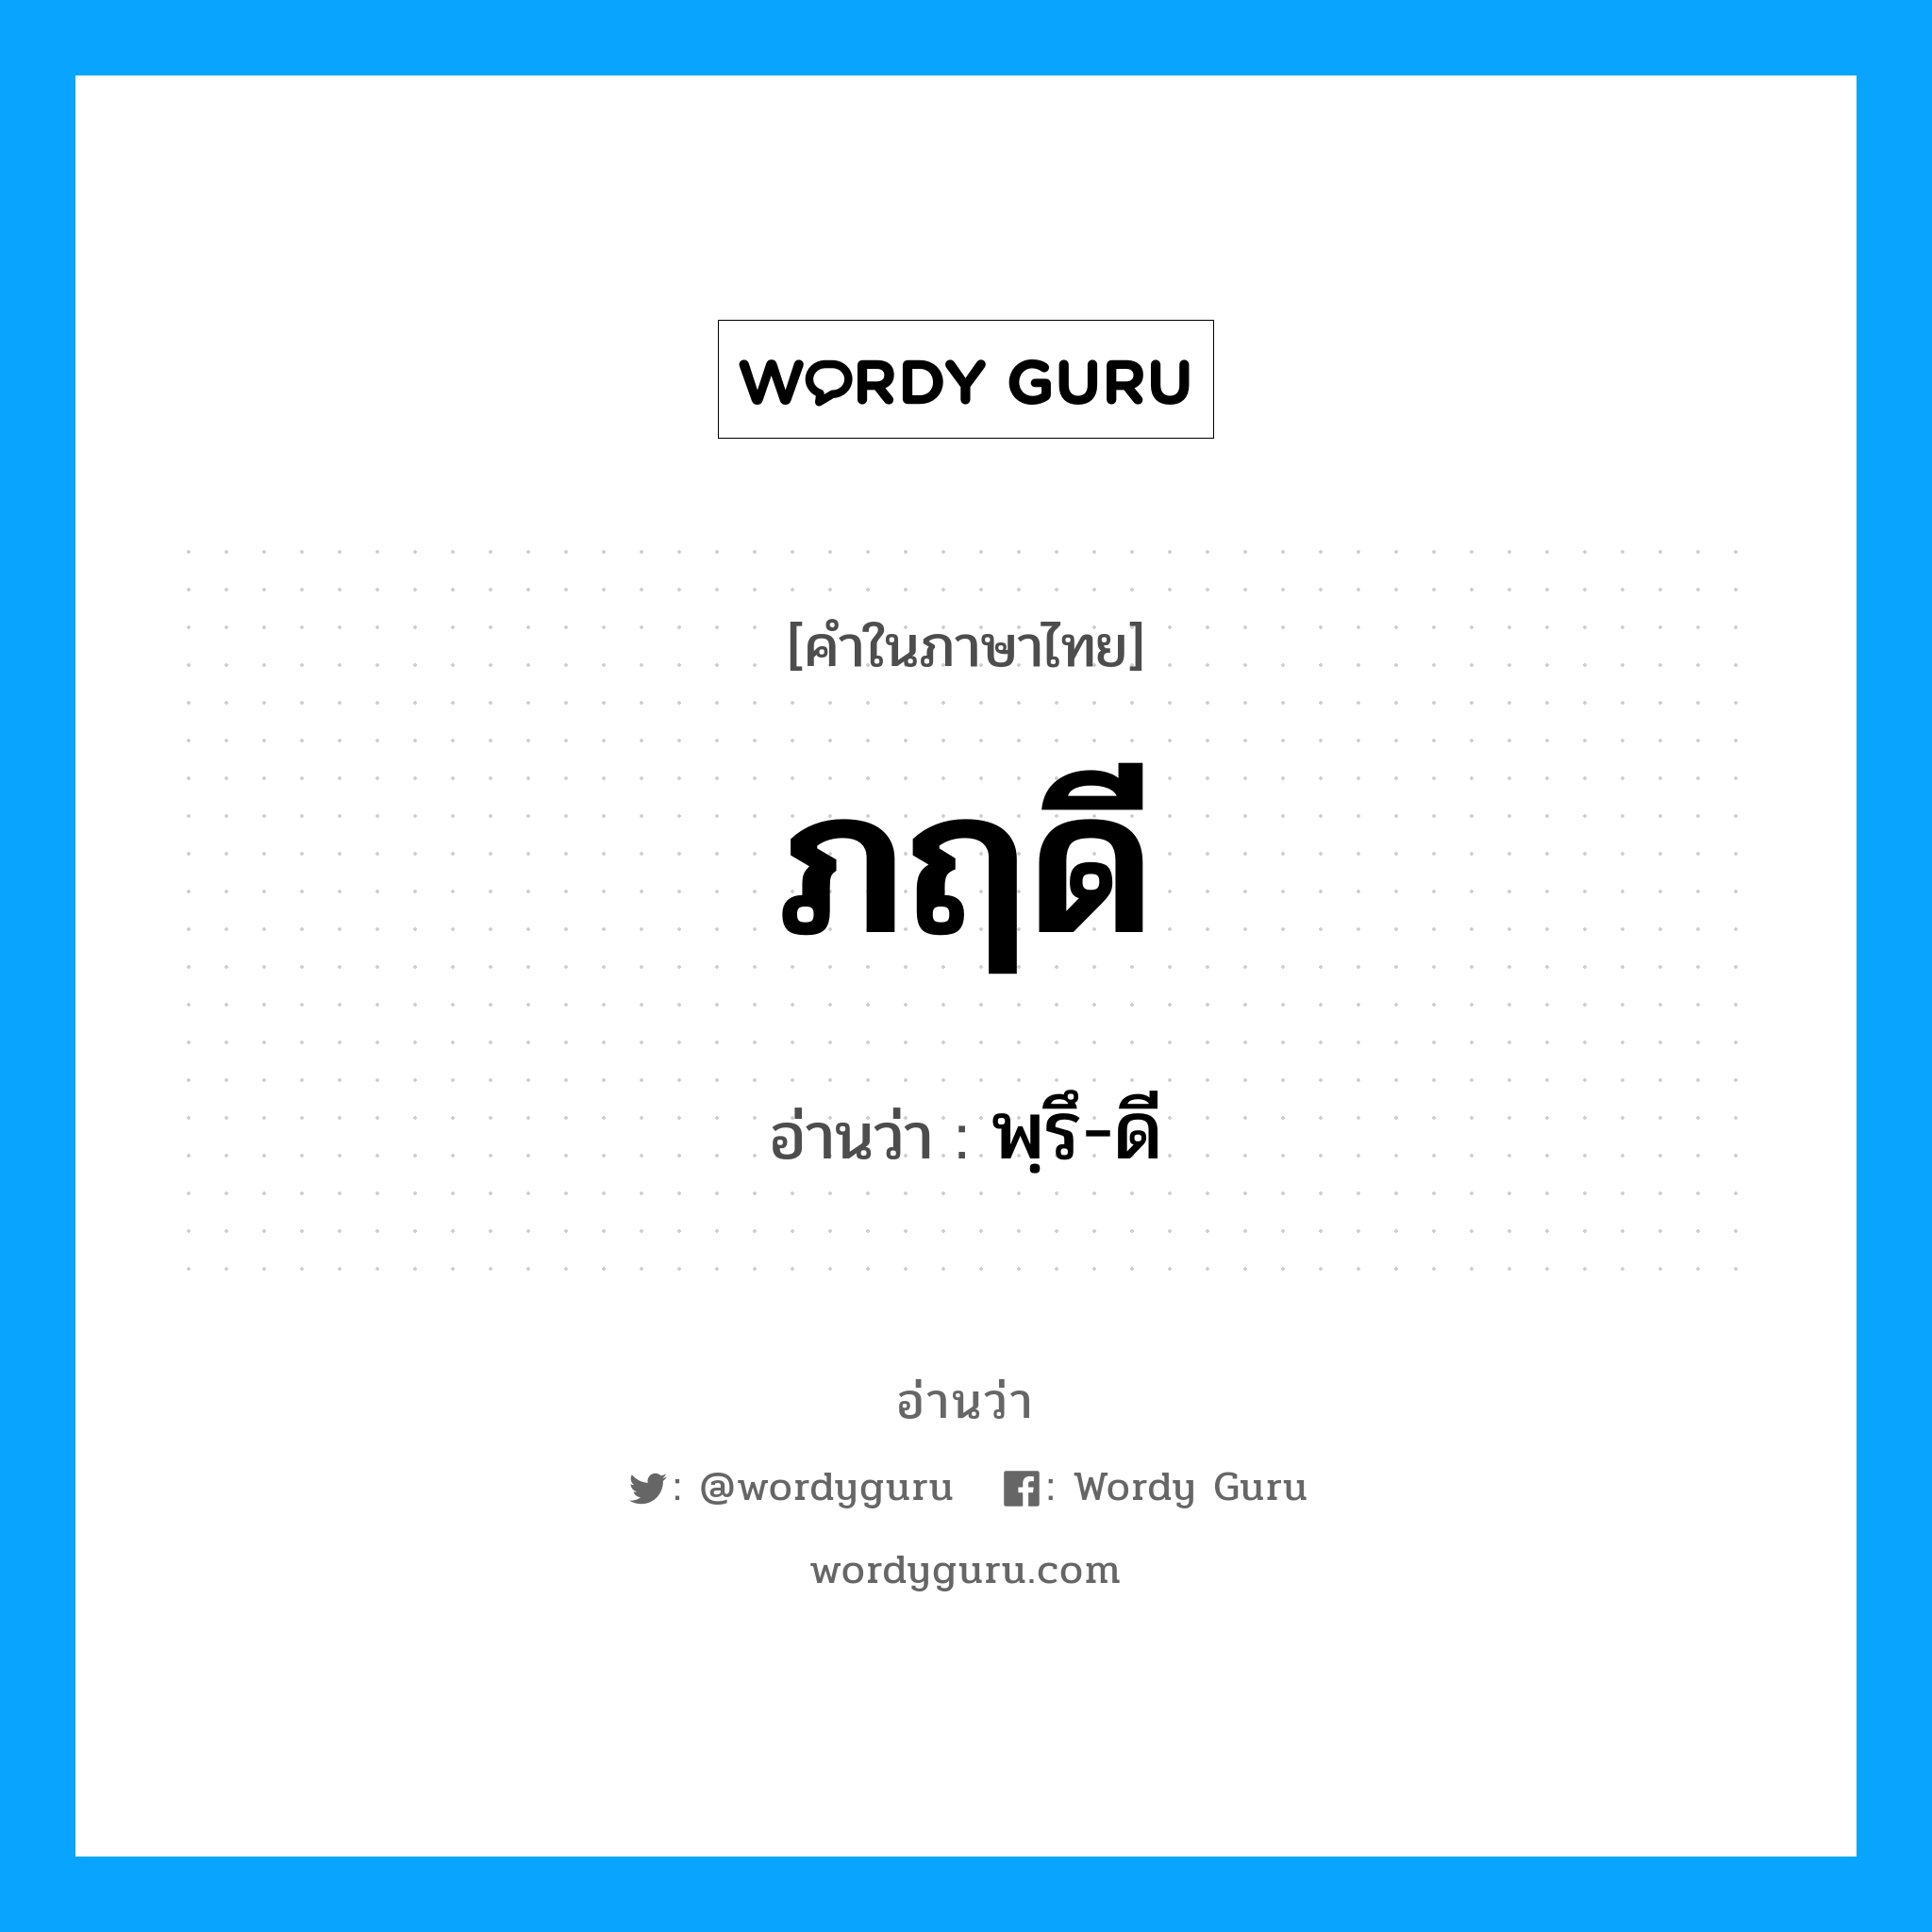 พฺรึ-ดี เป็นคำอ่านของคำไหน?, คำในภาษาไทย พฺรึ-ดี อ่านว่า ภฤดี